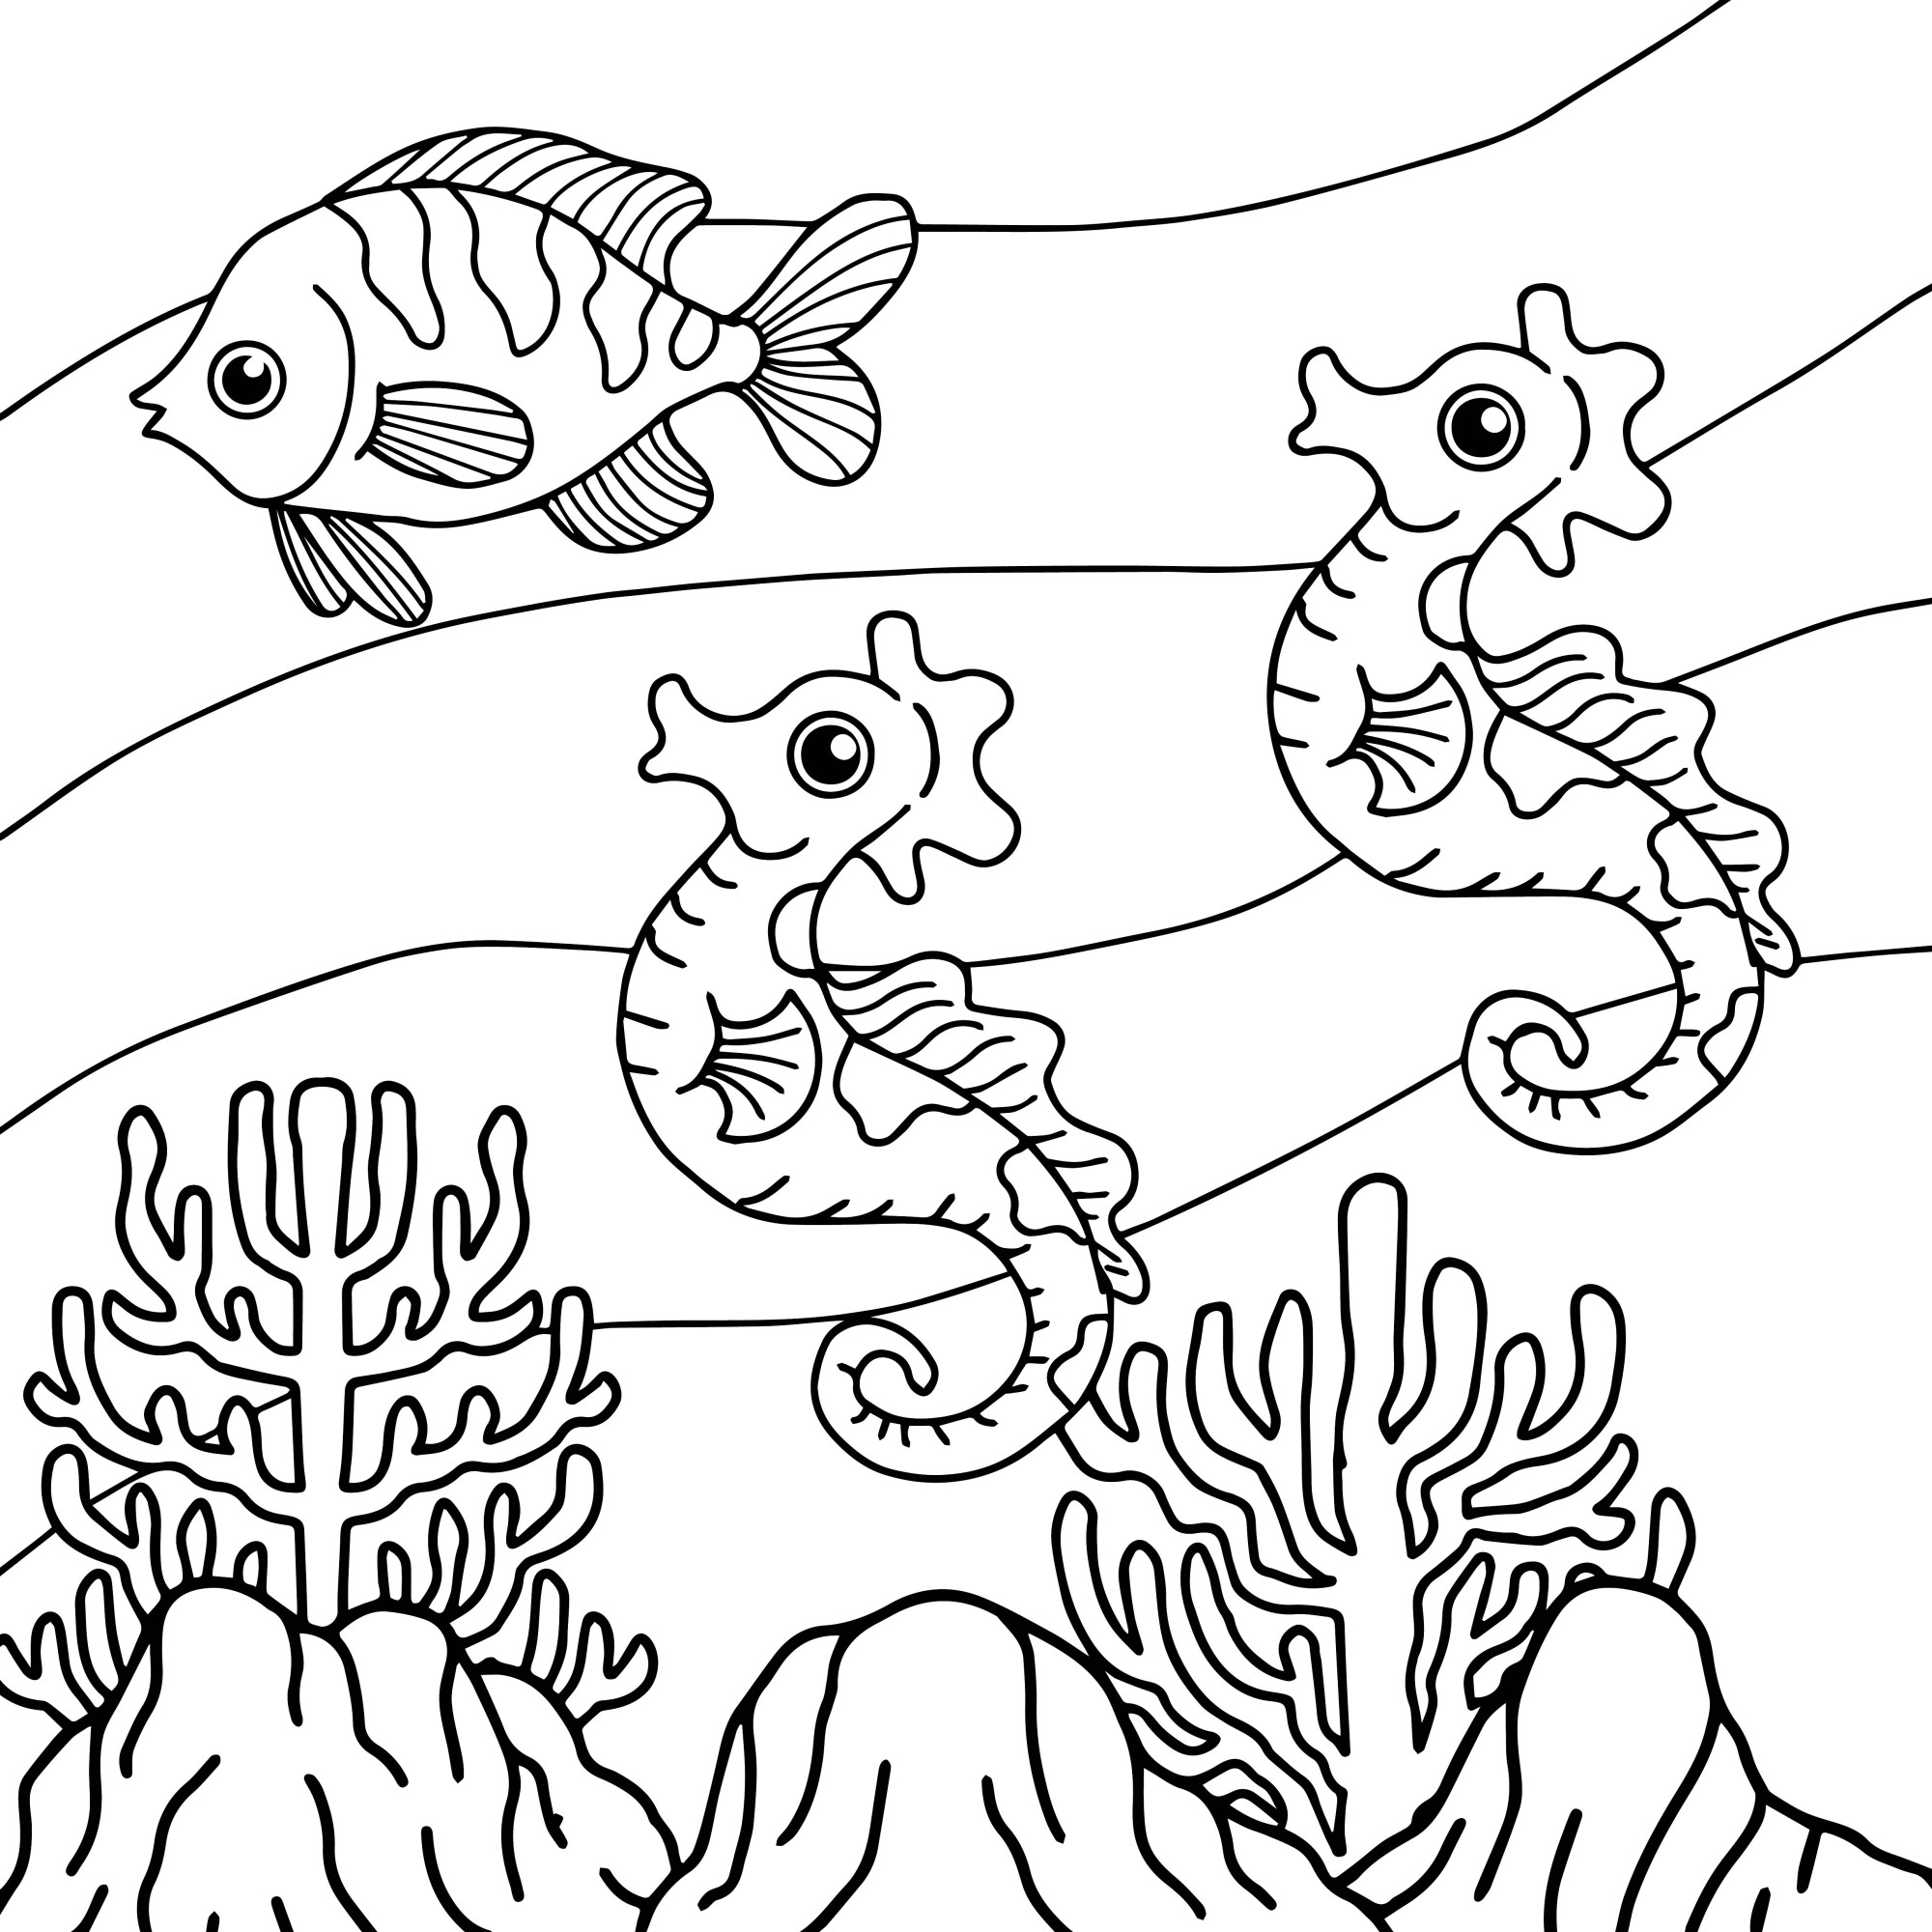 Раскраска для детей: рыбка с морскими коньками